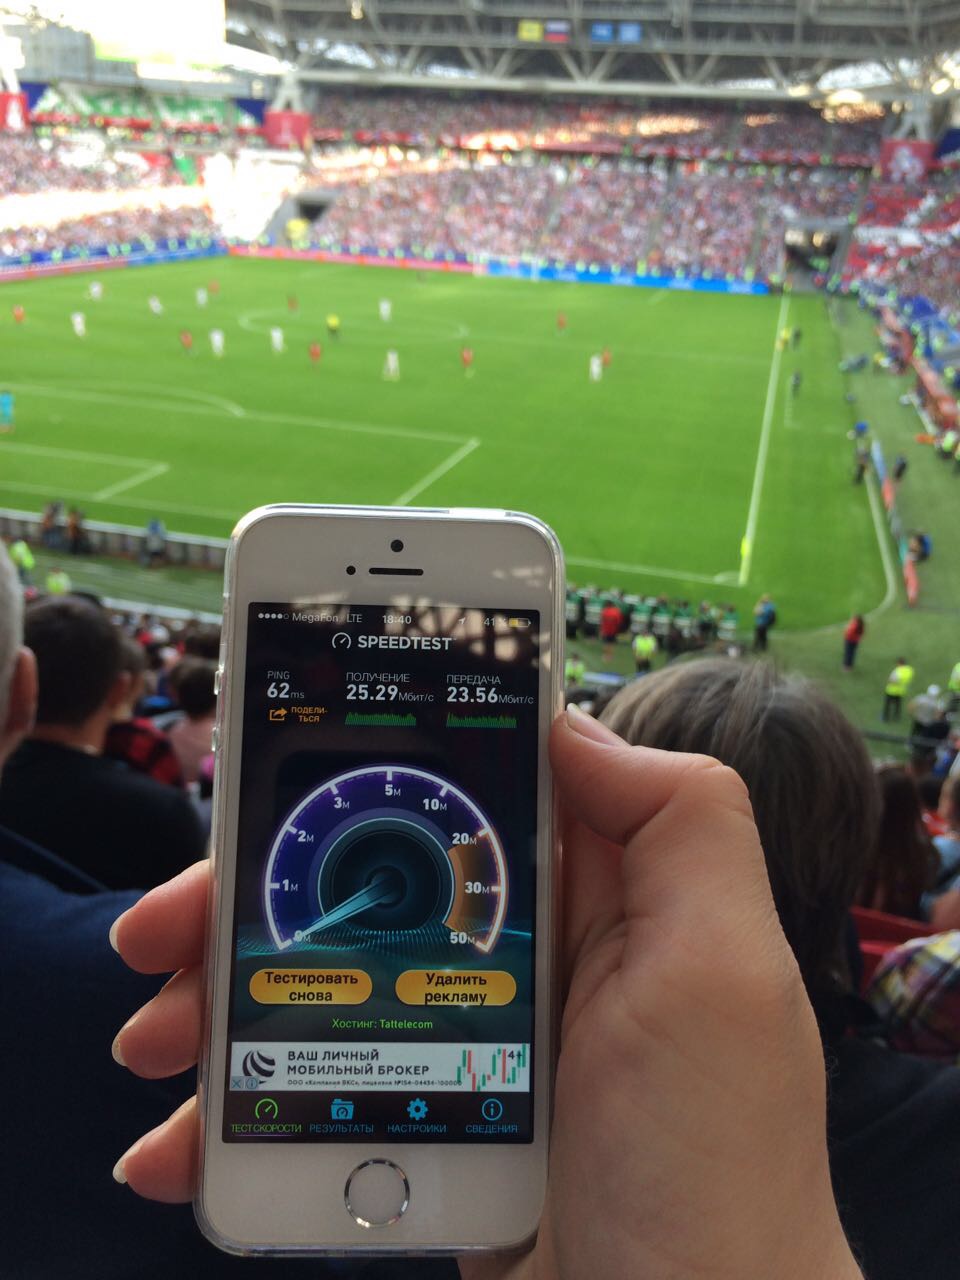 Фанаты сборных Германии и Чили побили интернет-рекорд матча #Pormex